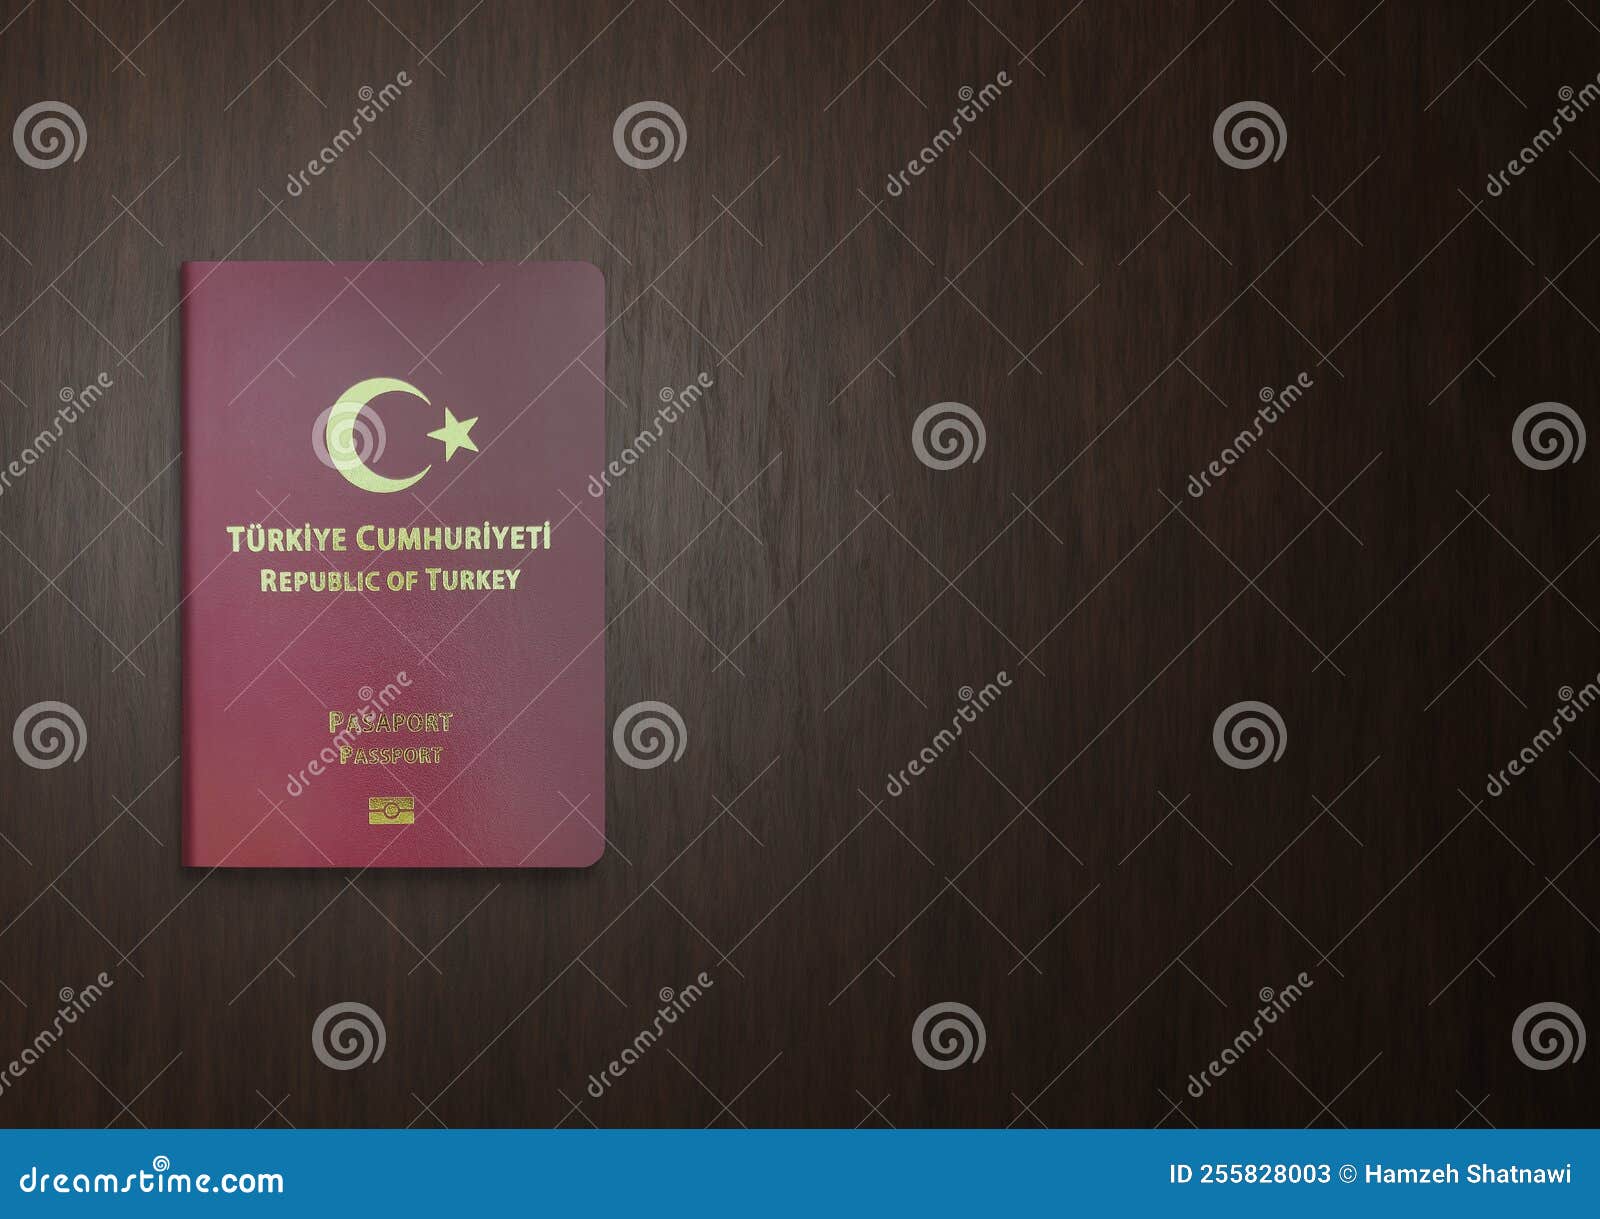 土耳其护照案例_邦驰出国